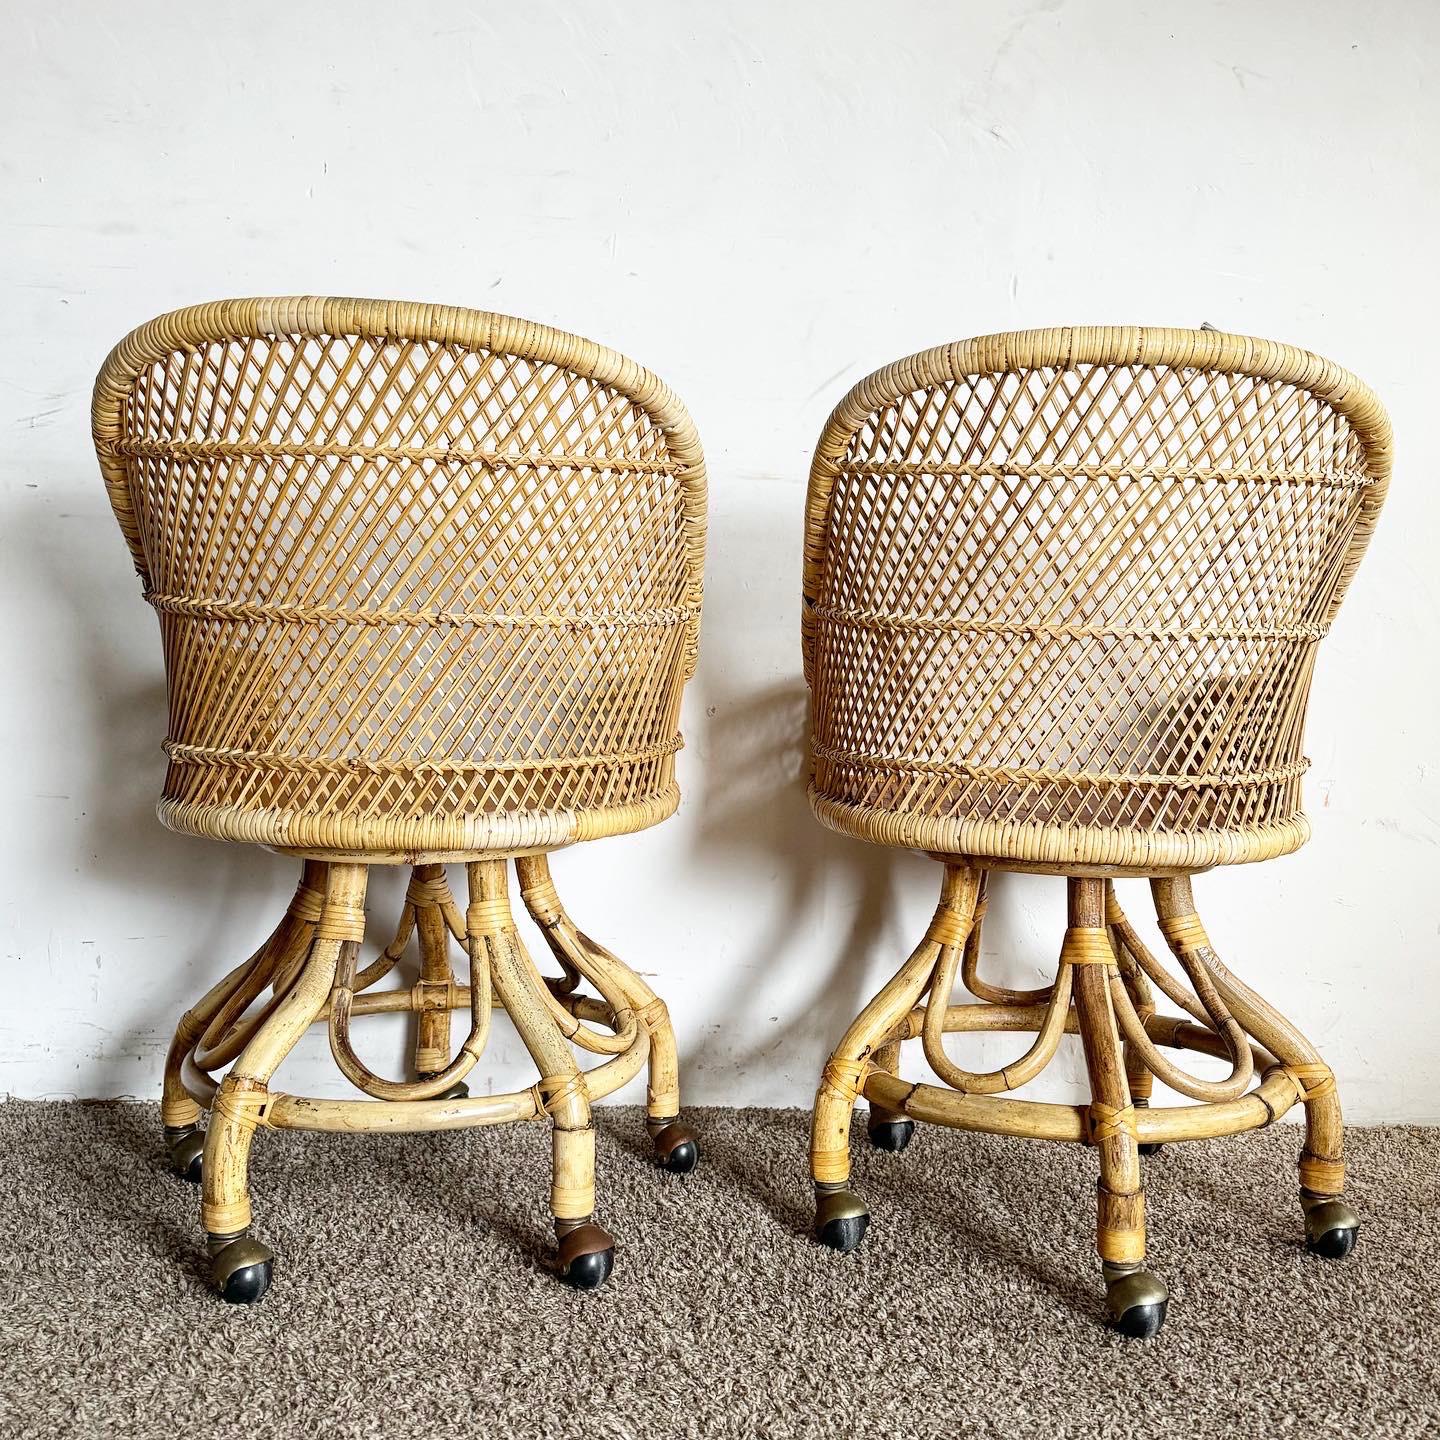 Les chaises de salle à manger Boho Chic Buri Rattan Bamboo Swivel Barrel sur roulettes, un ensemble de quatre, mélangent des textures naturelles avec un design fonctionnel. Ces chaises offrent une assise confortable avec une fonction pivotante